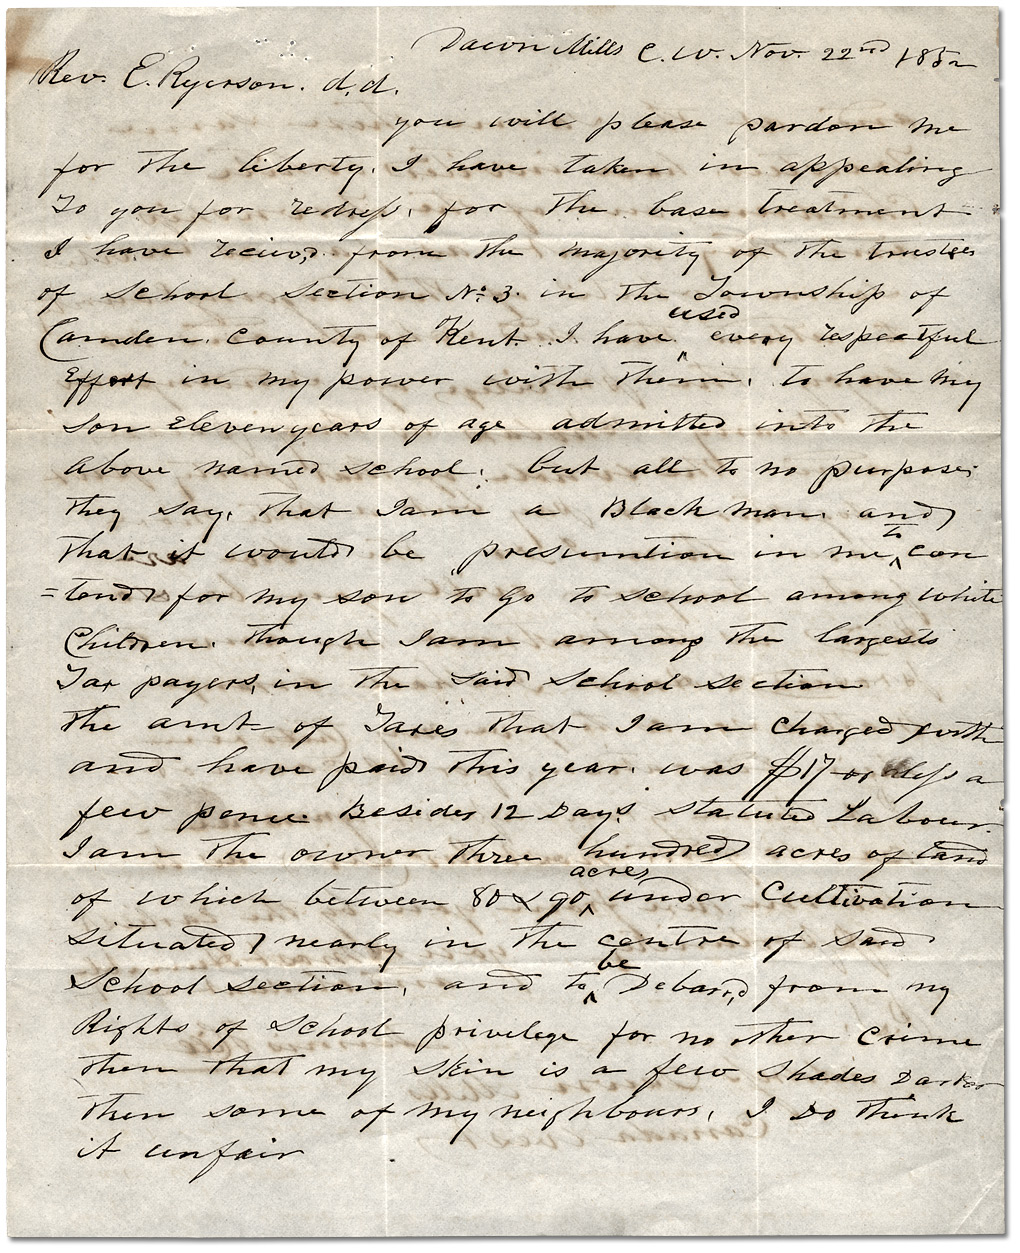 Lettre à Egerton Ryerson, surintendant principal de l’éducation, de Dennis Hill, 22 novembre 1852